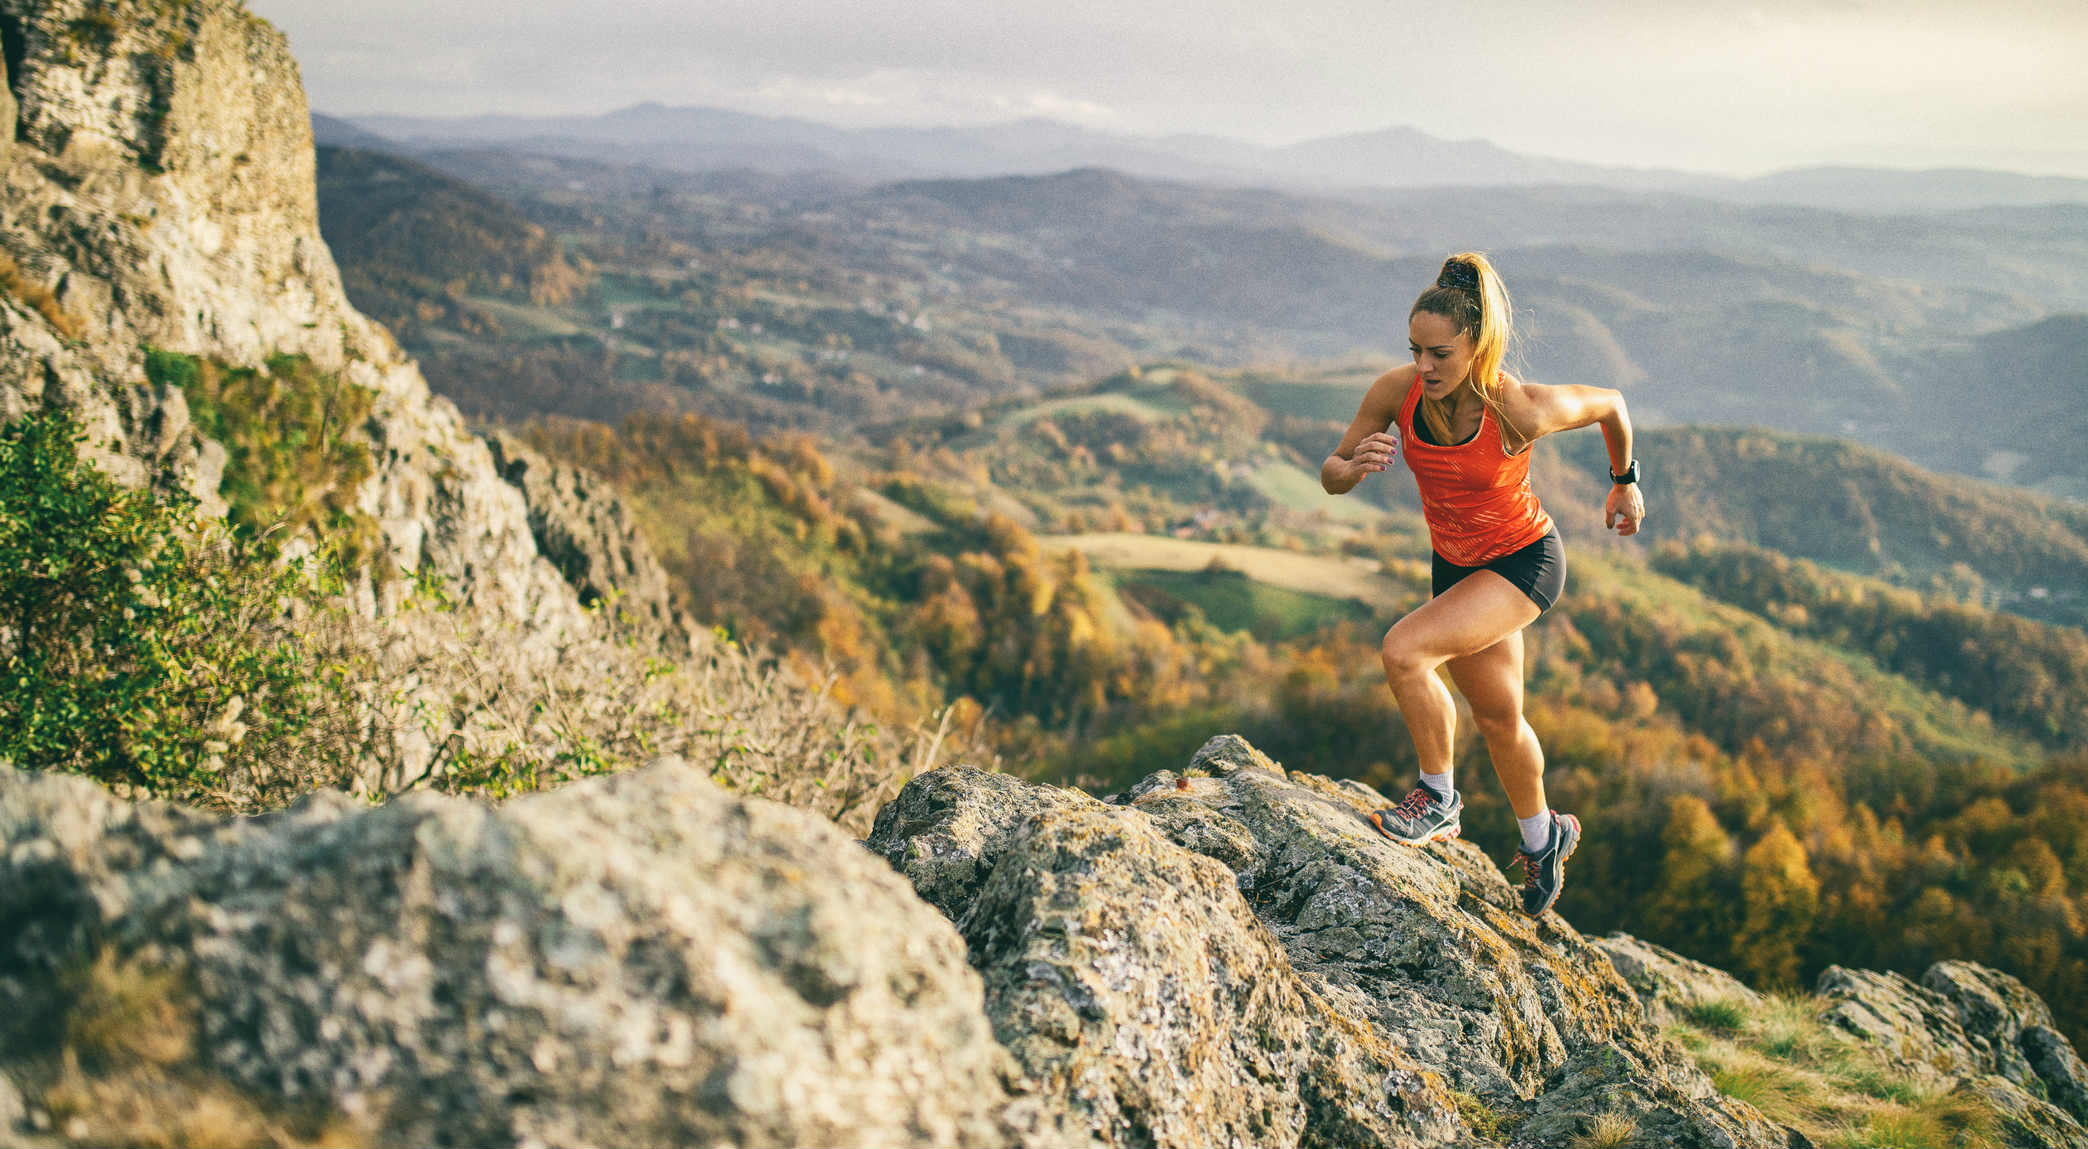 "La filosofia del running": correre come metafora del vivere